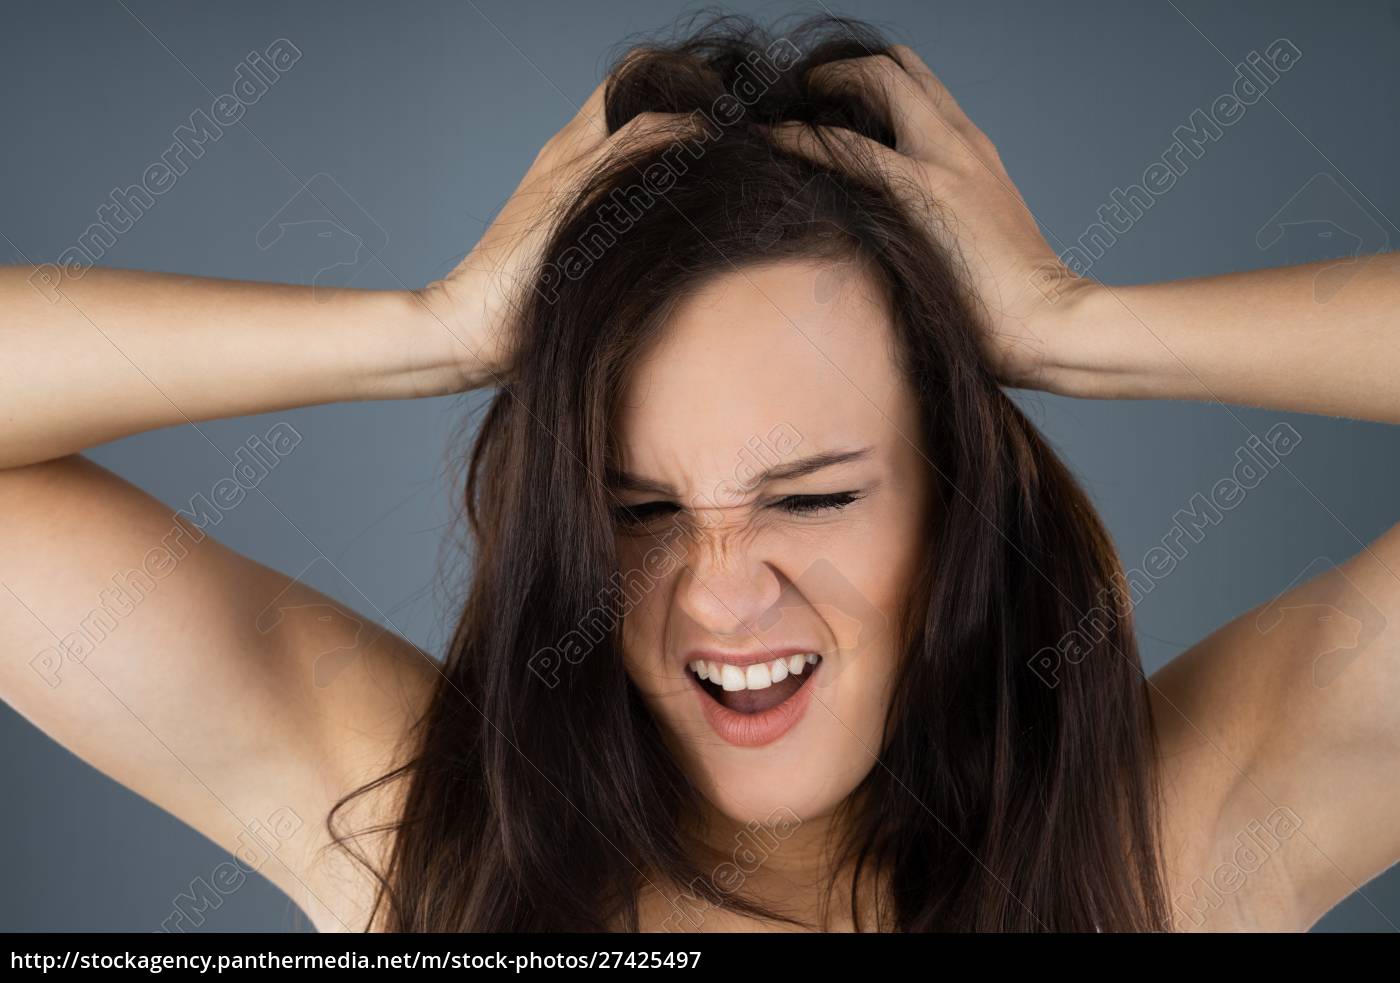 Woman Scratching Her Itchy Head Lizenzfreies Bild 27425497